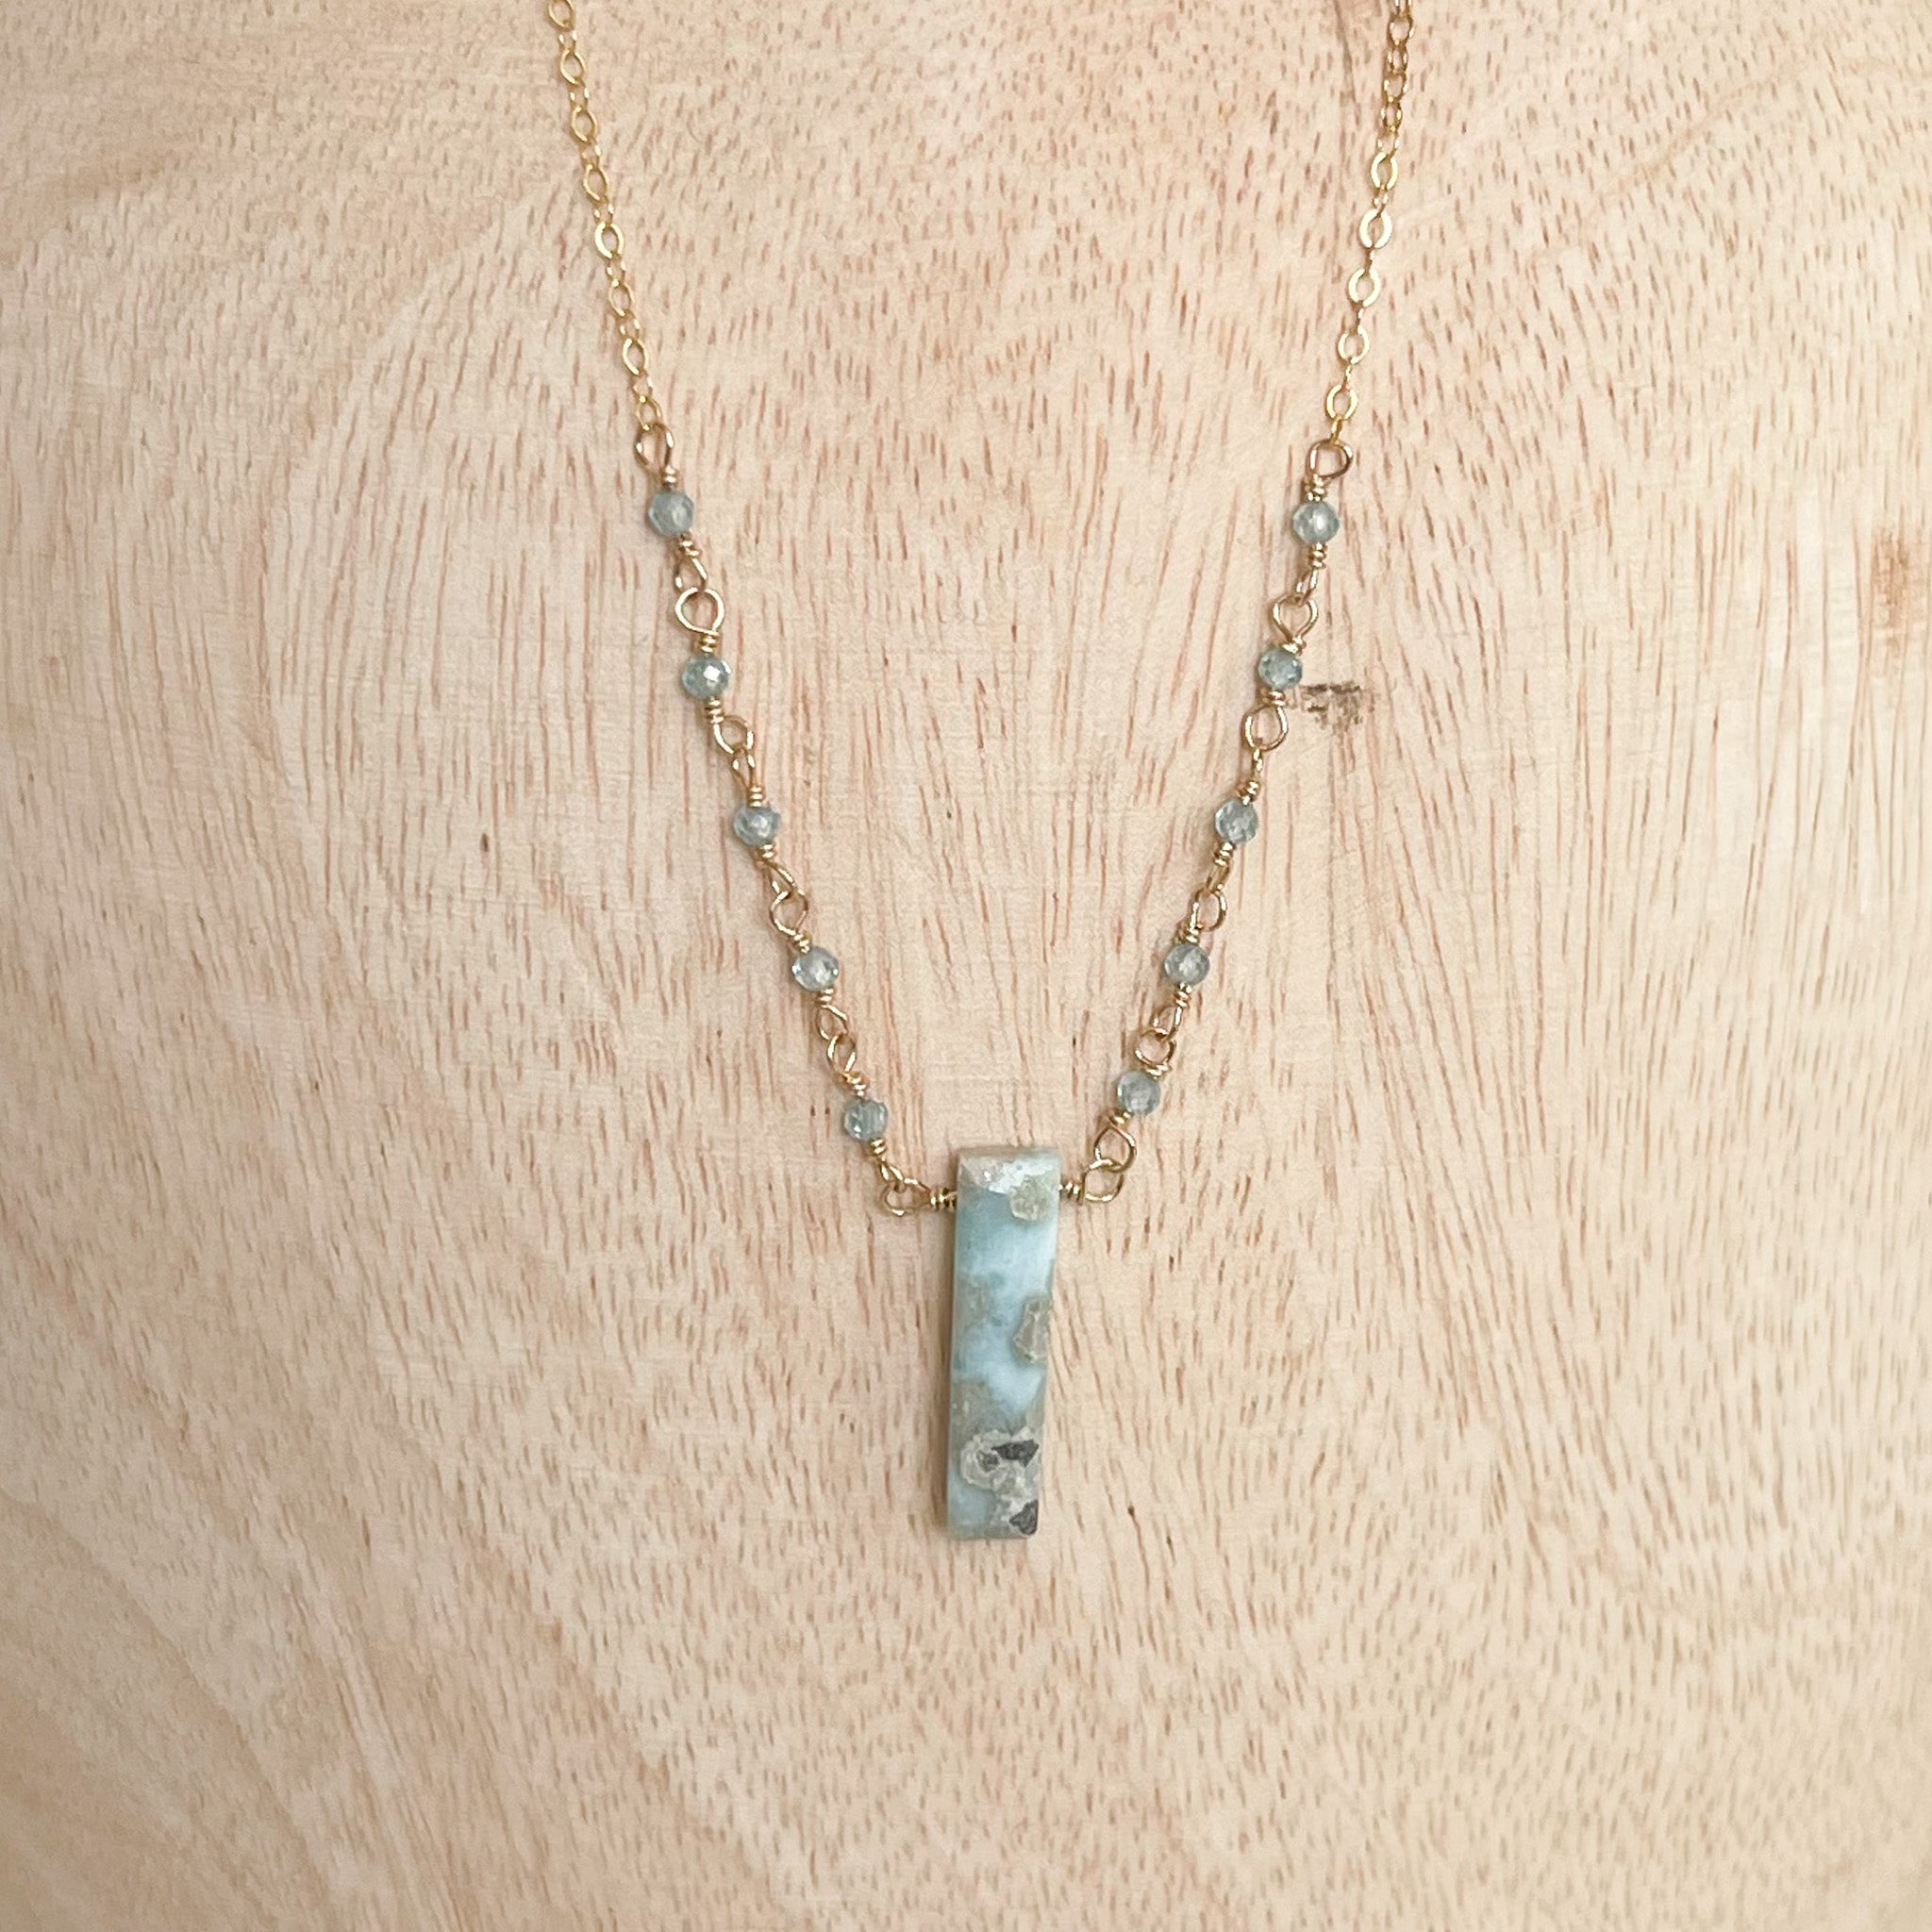 blue gemstone pendant necklace, larimer jewelry